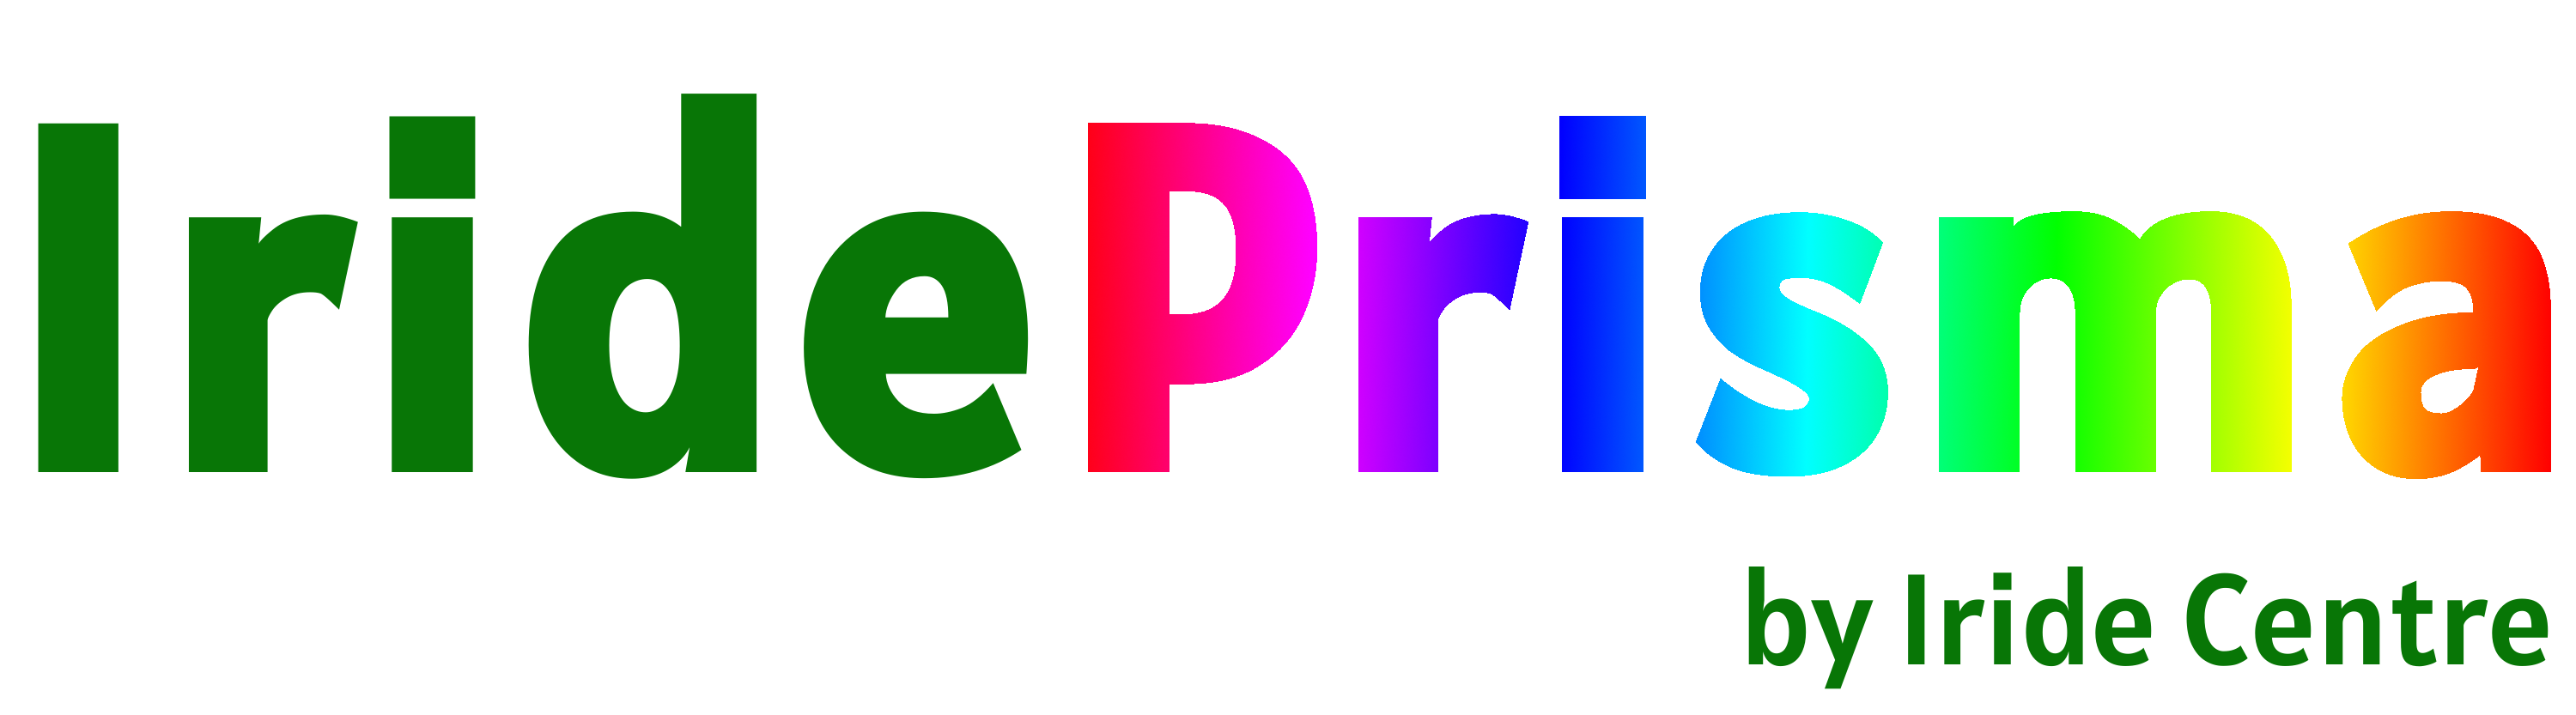 Logo Prisma sense fons